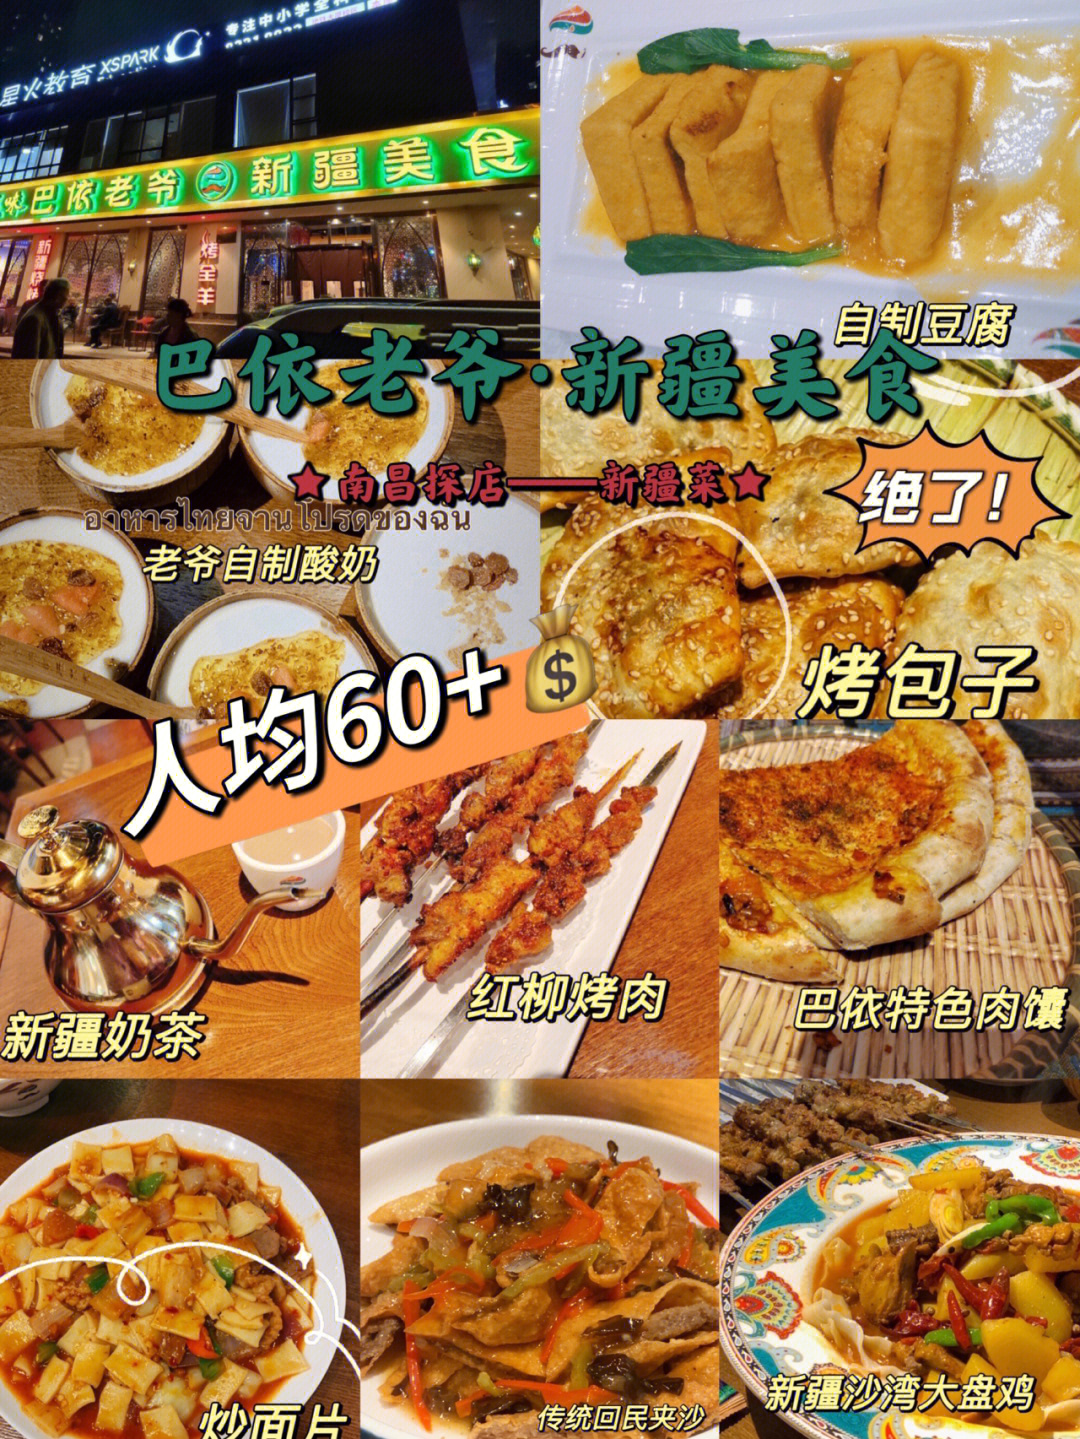 巴依老爷餐厅菜单图片